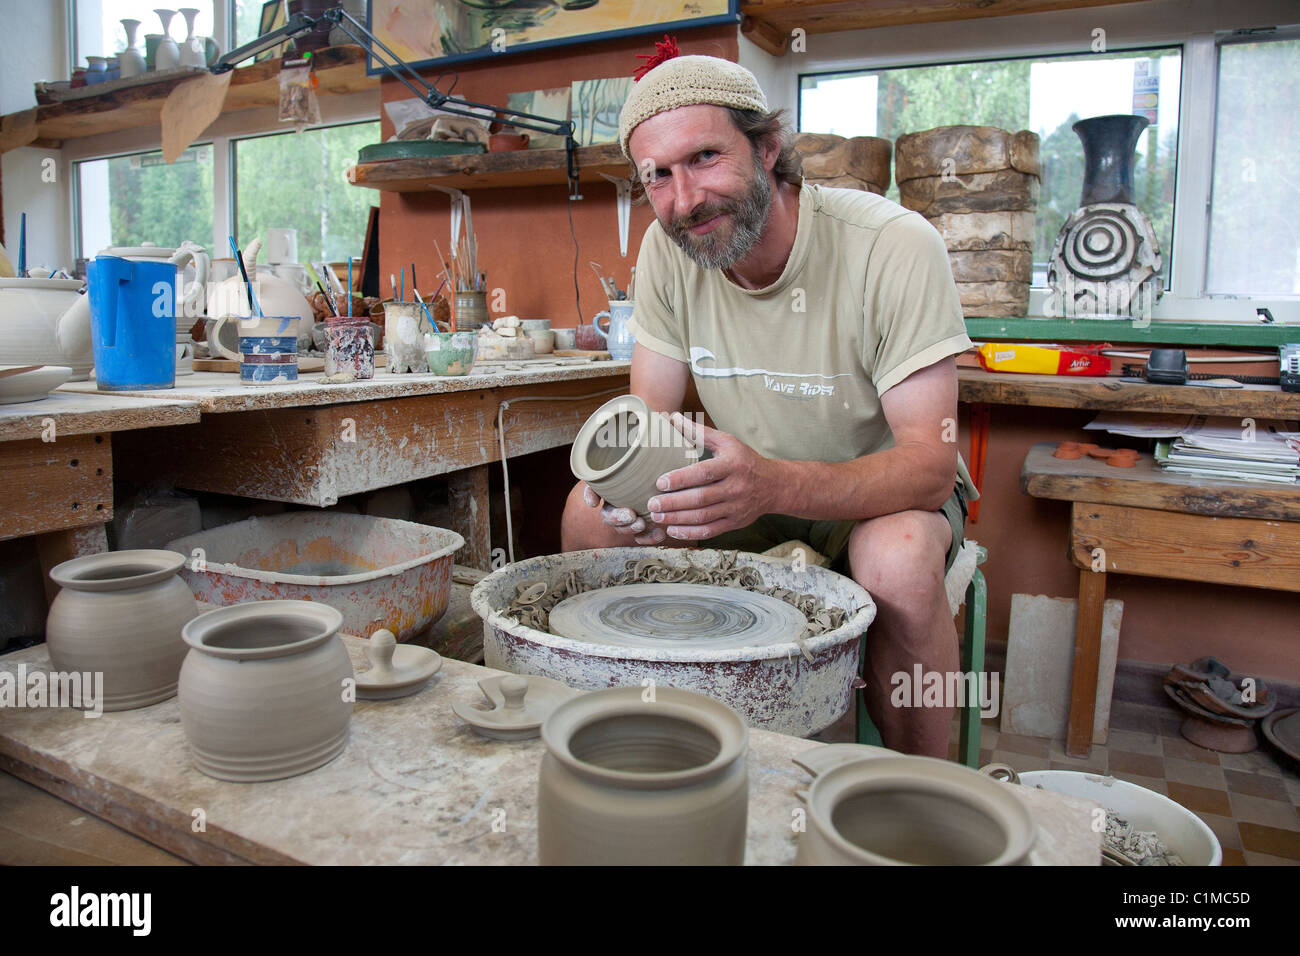 Piusa céramiste dans atelier de poterie, Setomaa, Tallinn, Estonie, Europe Comté Banque D'Images